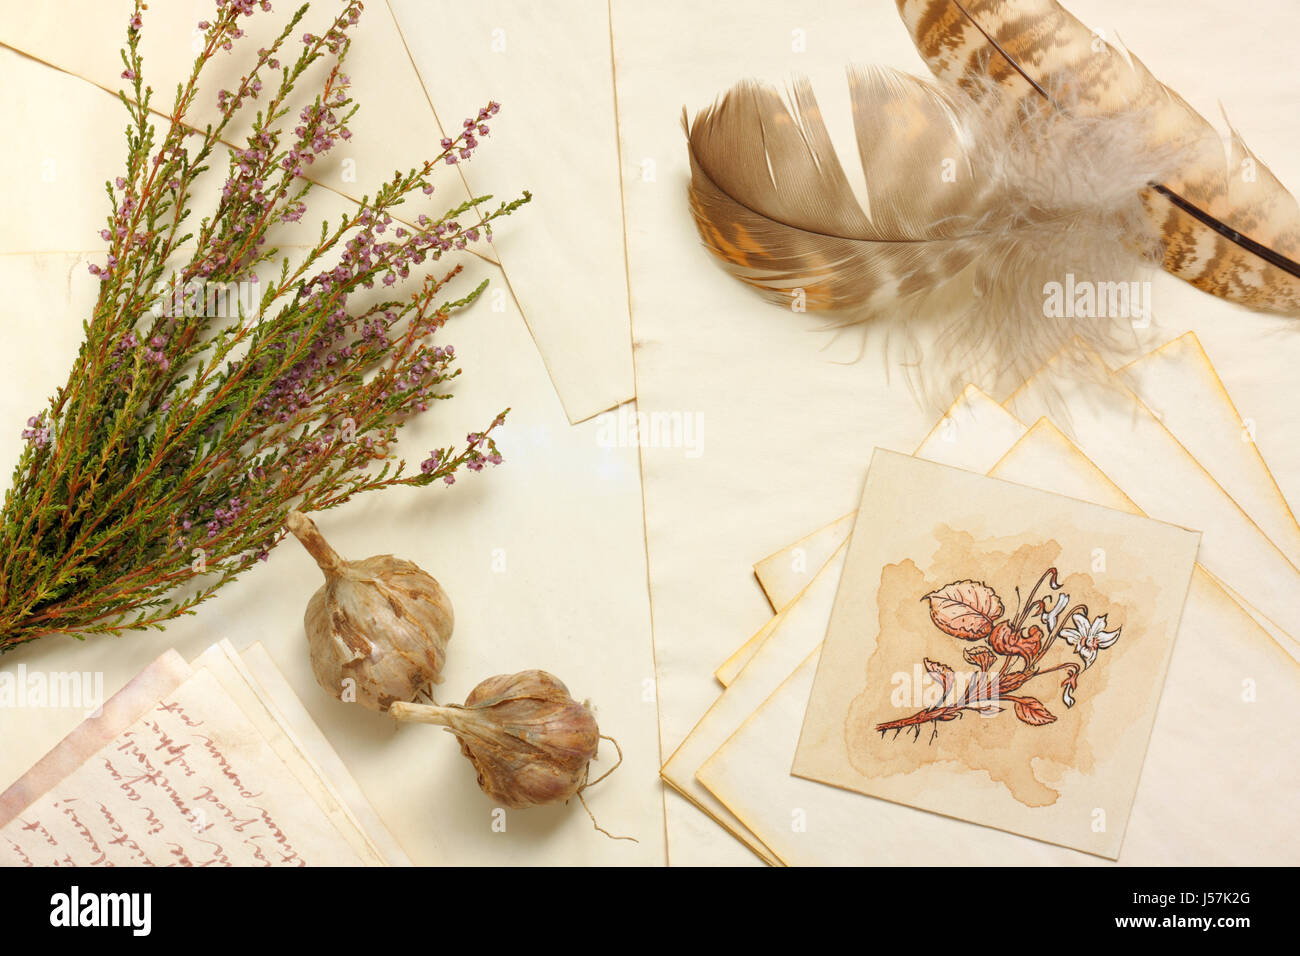 Nostalgico vintage vita ancora con aglio, disegno botanico, mazzo di essiccato heather e piume su di età compresa tra i fogli di carta Foto Stock